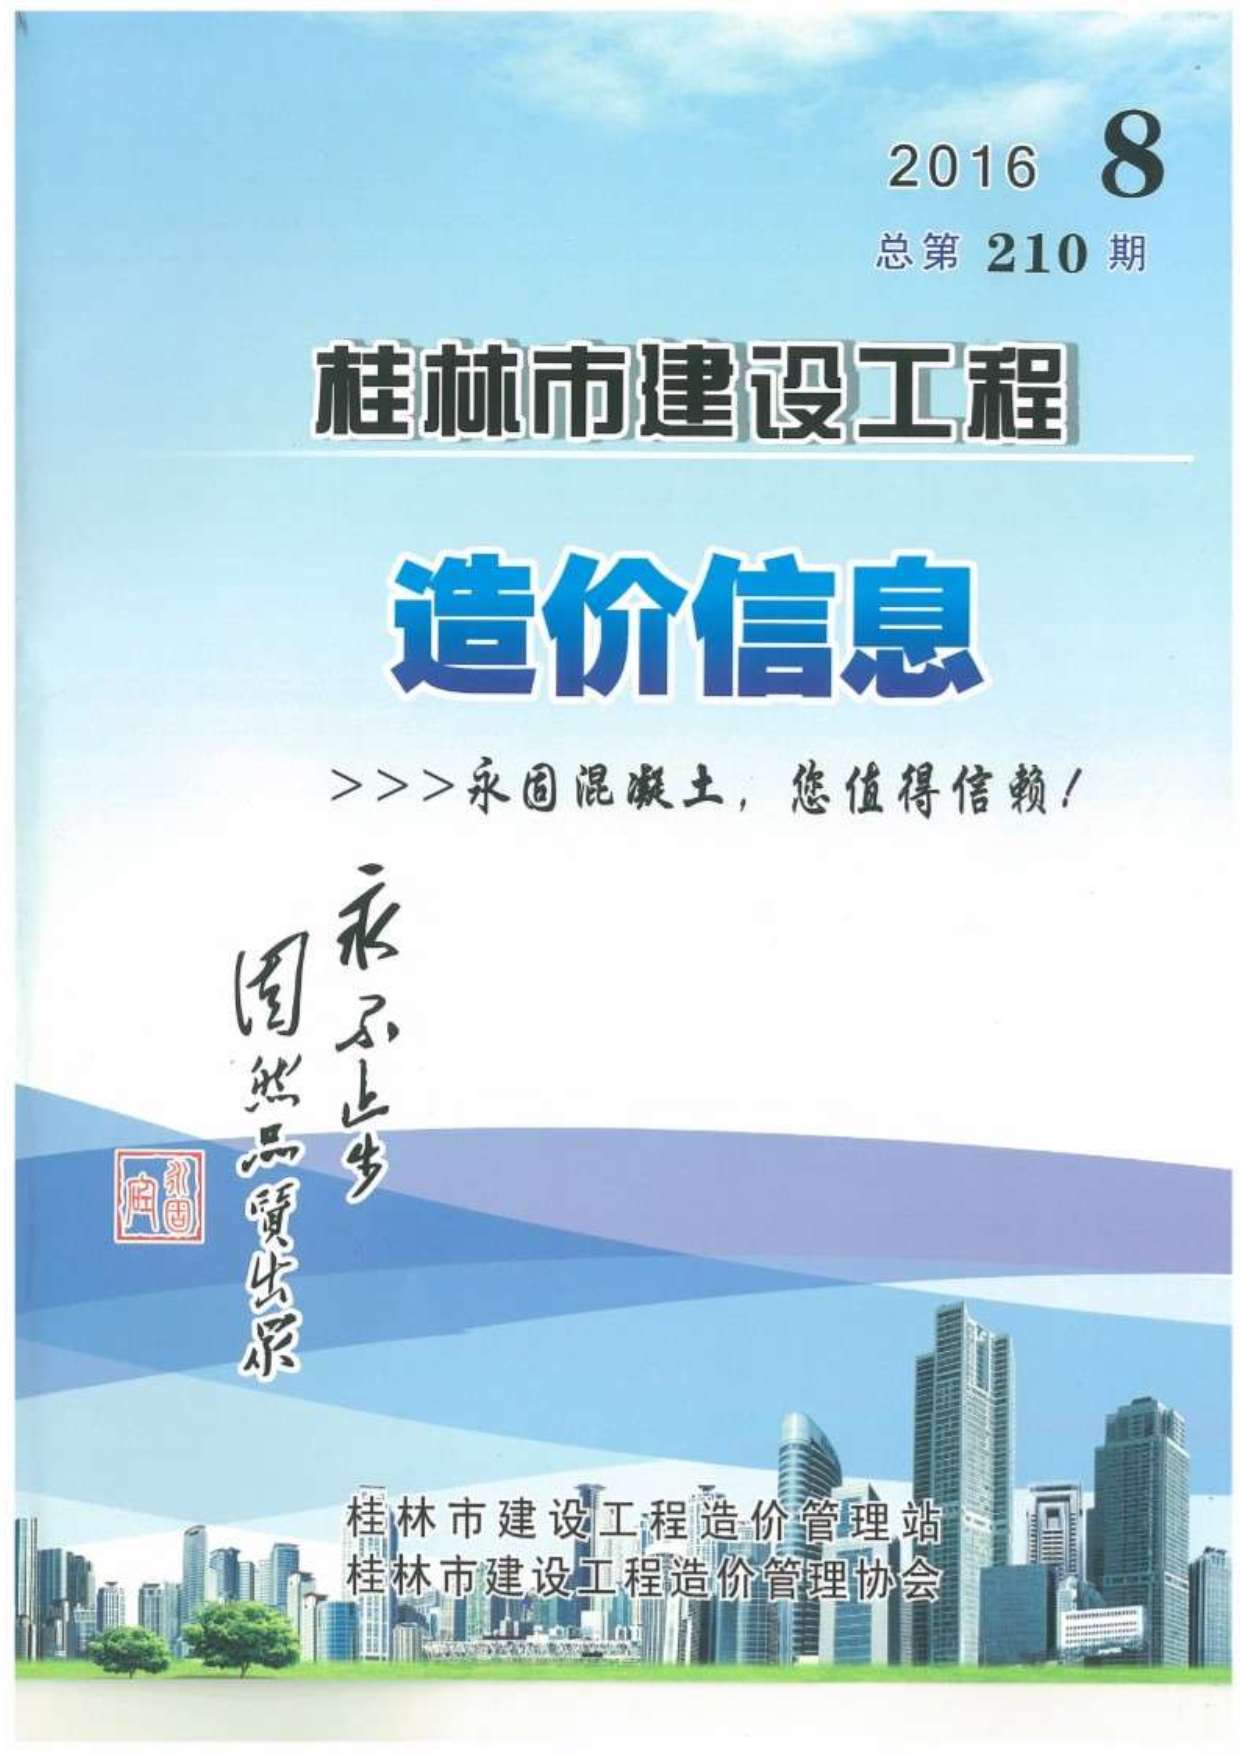 桂林市2016年8月建设工程造价信息